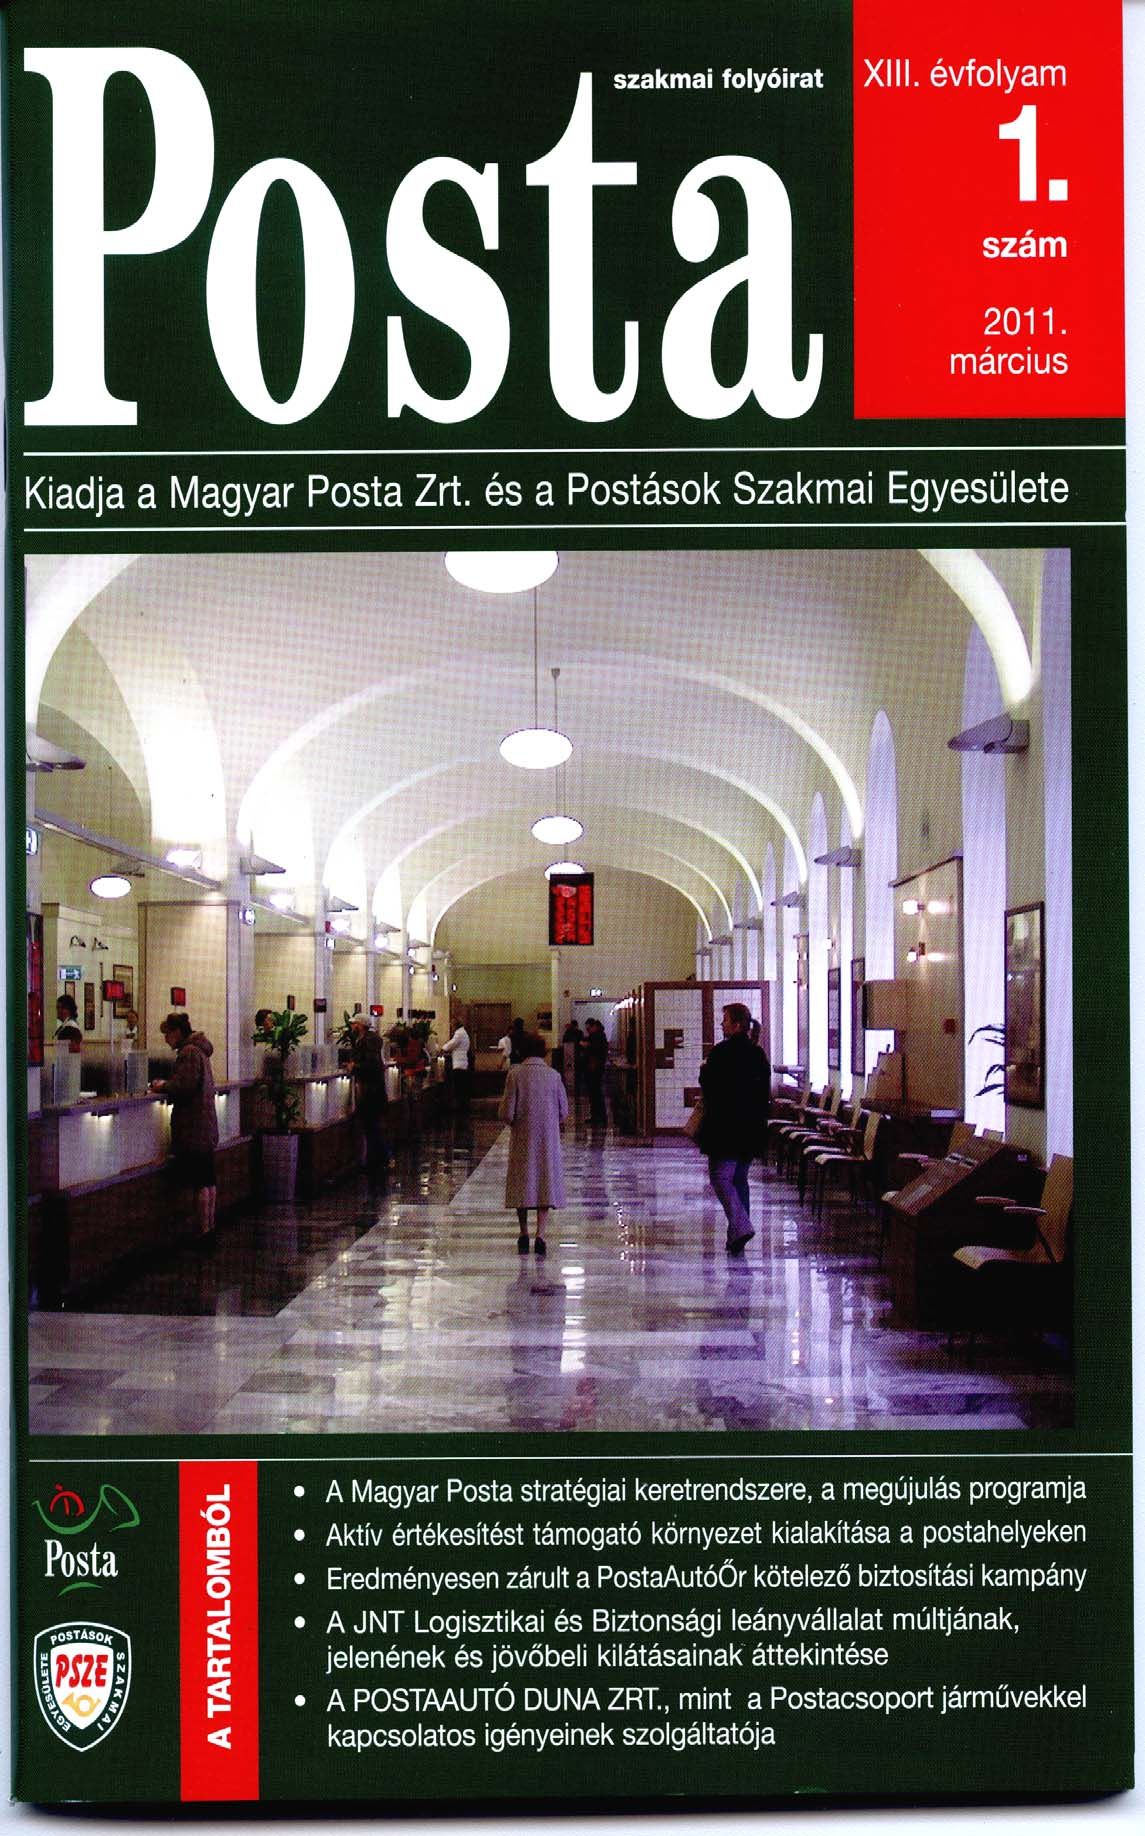 POSTA A szakmai folyóirat a tagokon túl, korlátozott példányszámban eljut a Magyar Posta Zrt.